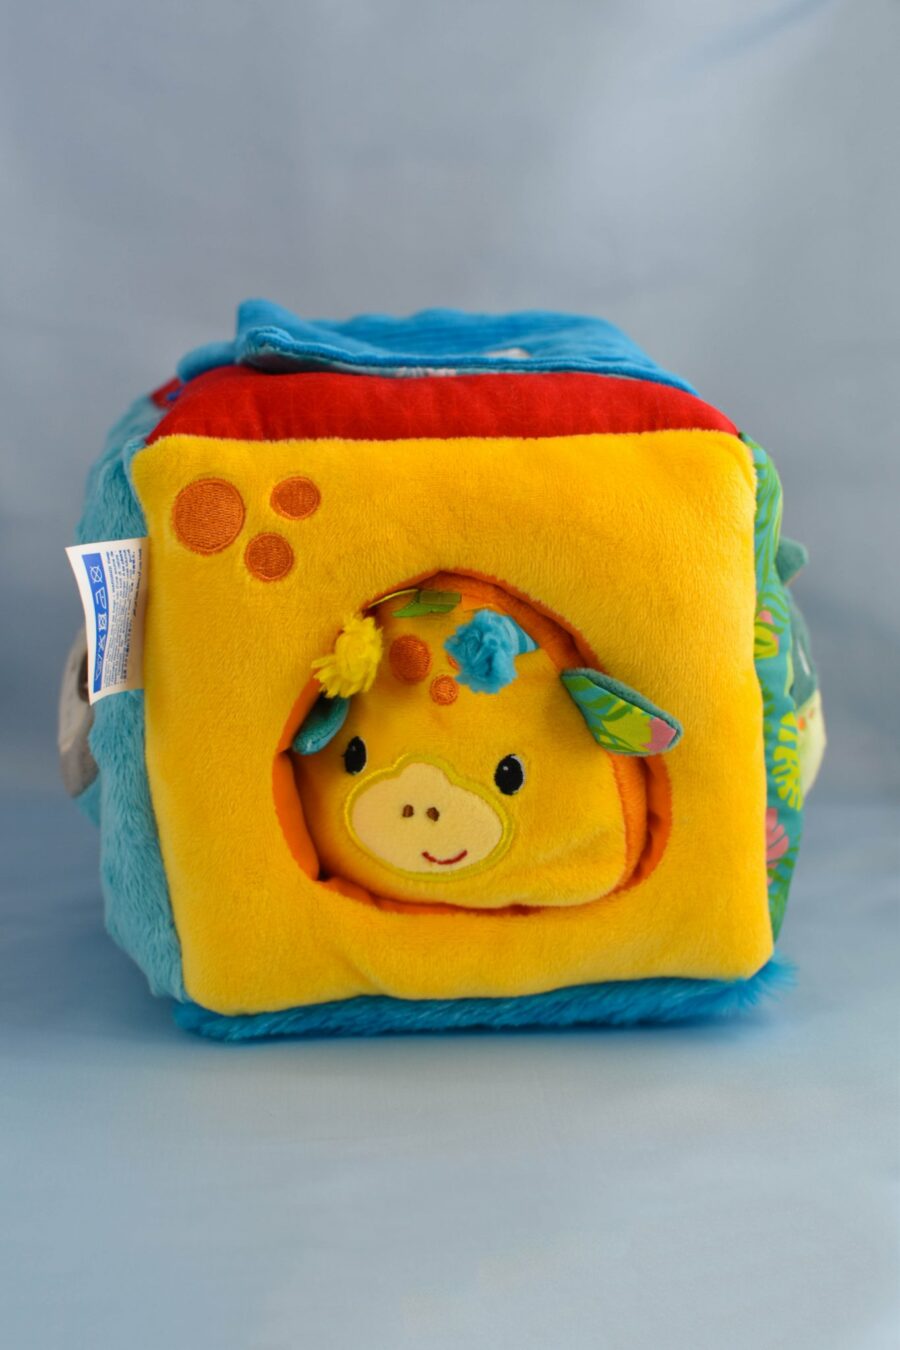 Cube d'éveil en tissus coloré pour bébé